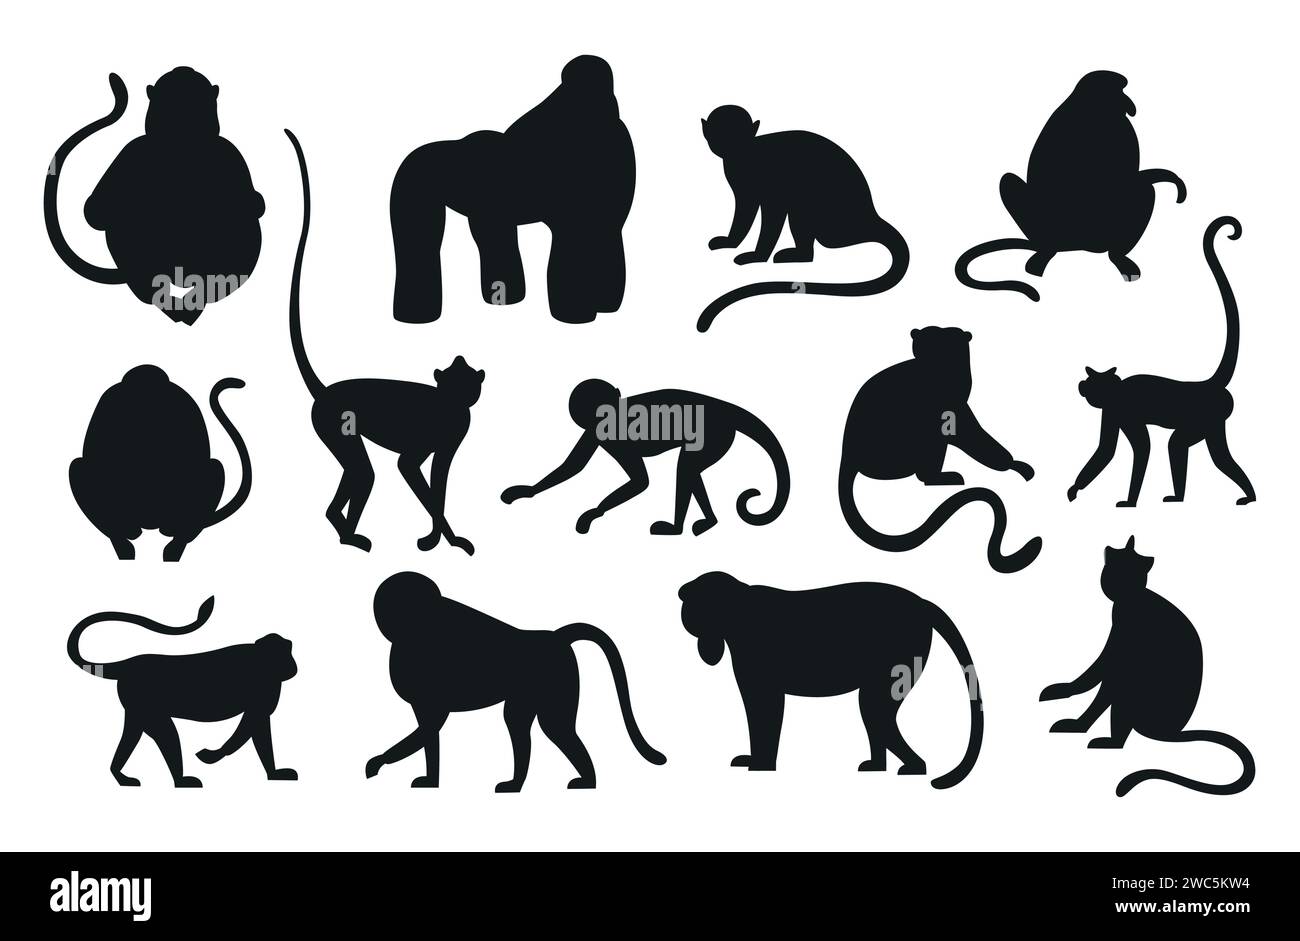 Silueta de monos. Colgar y saltar monos negros. Varios tipos de primates. Conjunto de animales exóticos aislados. Fauna de selva tropical exótica. Contorno furry mam Ilustración del Vector